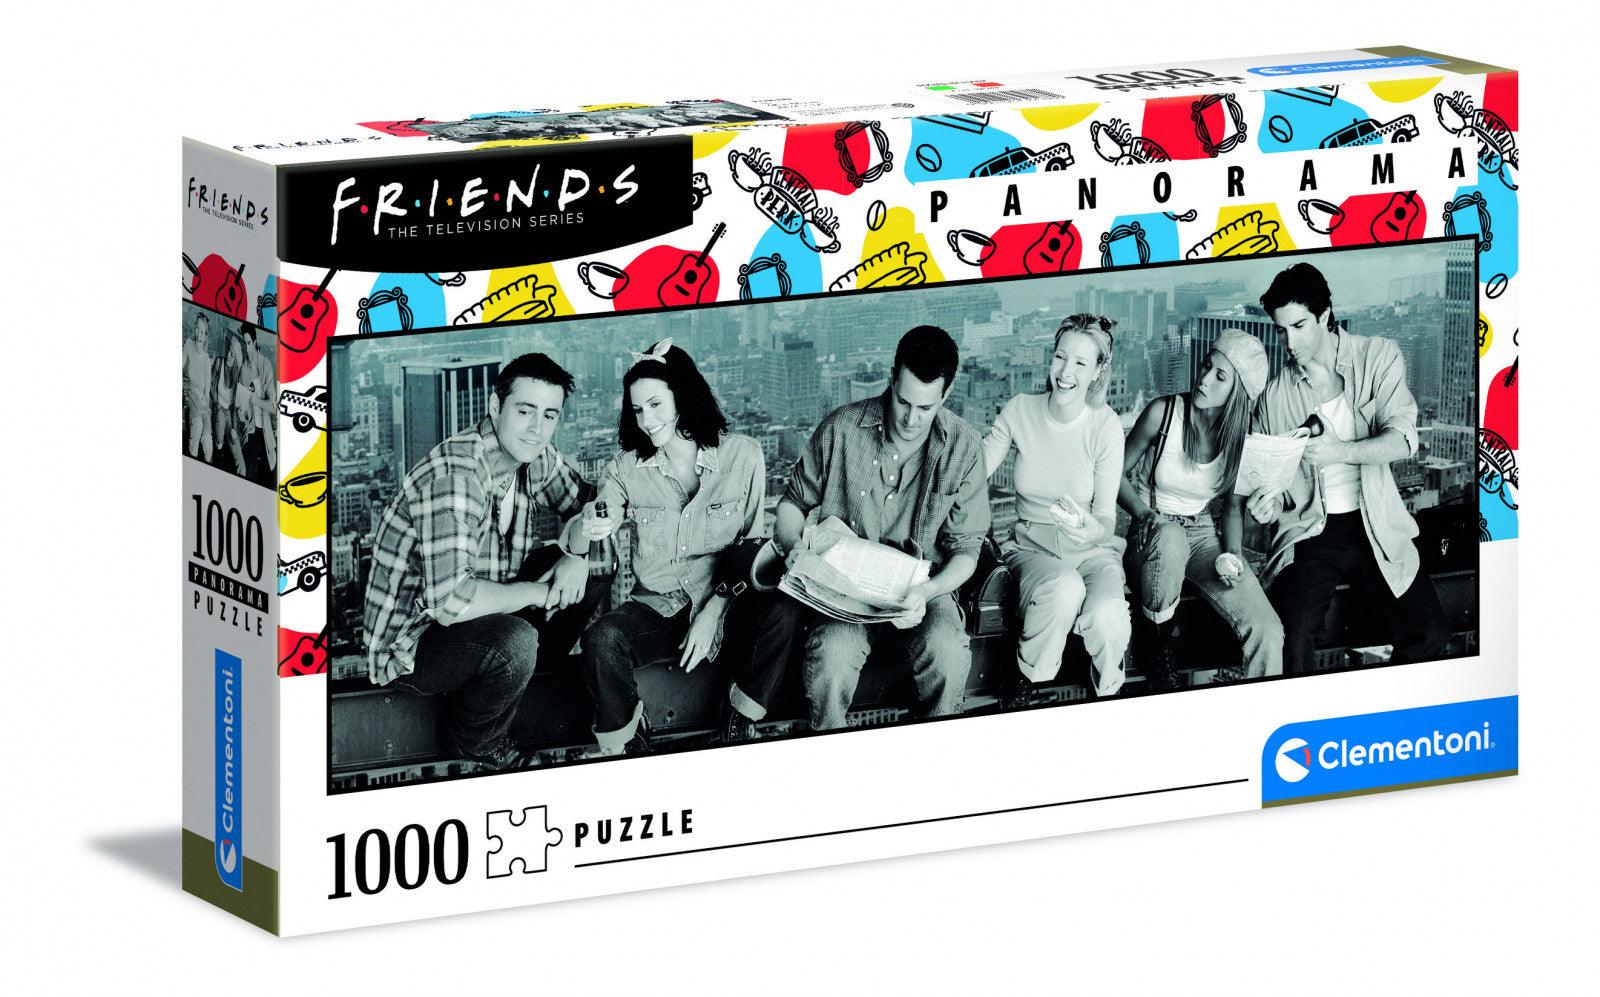 VR-97659 Clementoni Puzzle Friends Panorama 1000 pieces - Clementoni - Titan Pop Culture